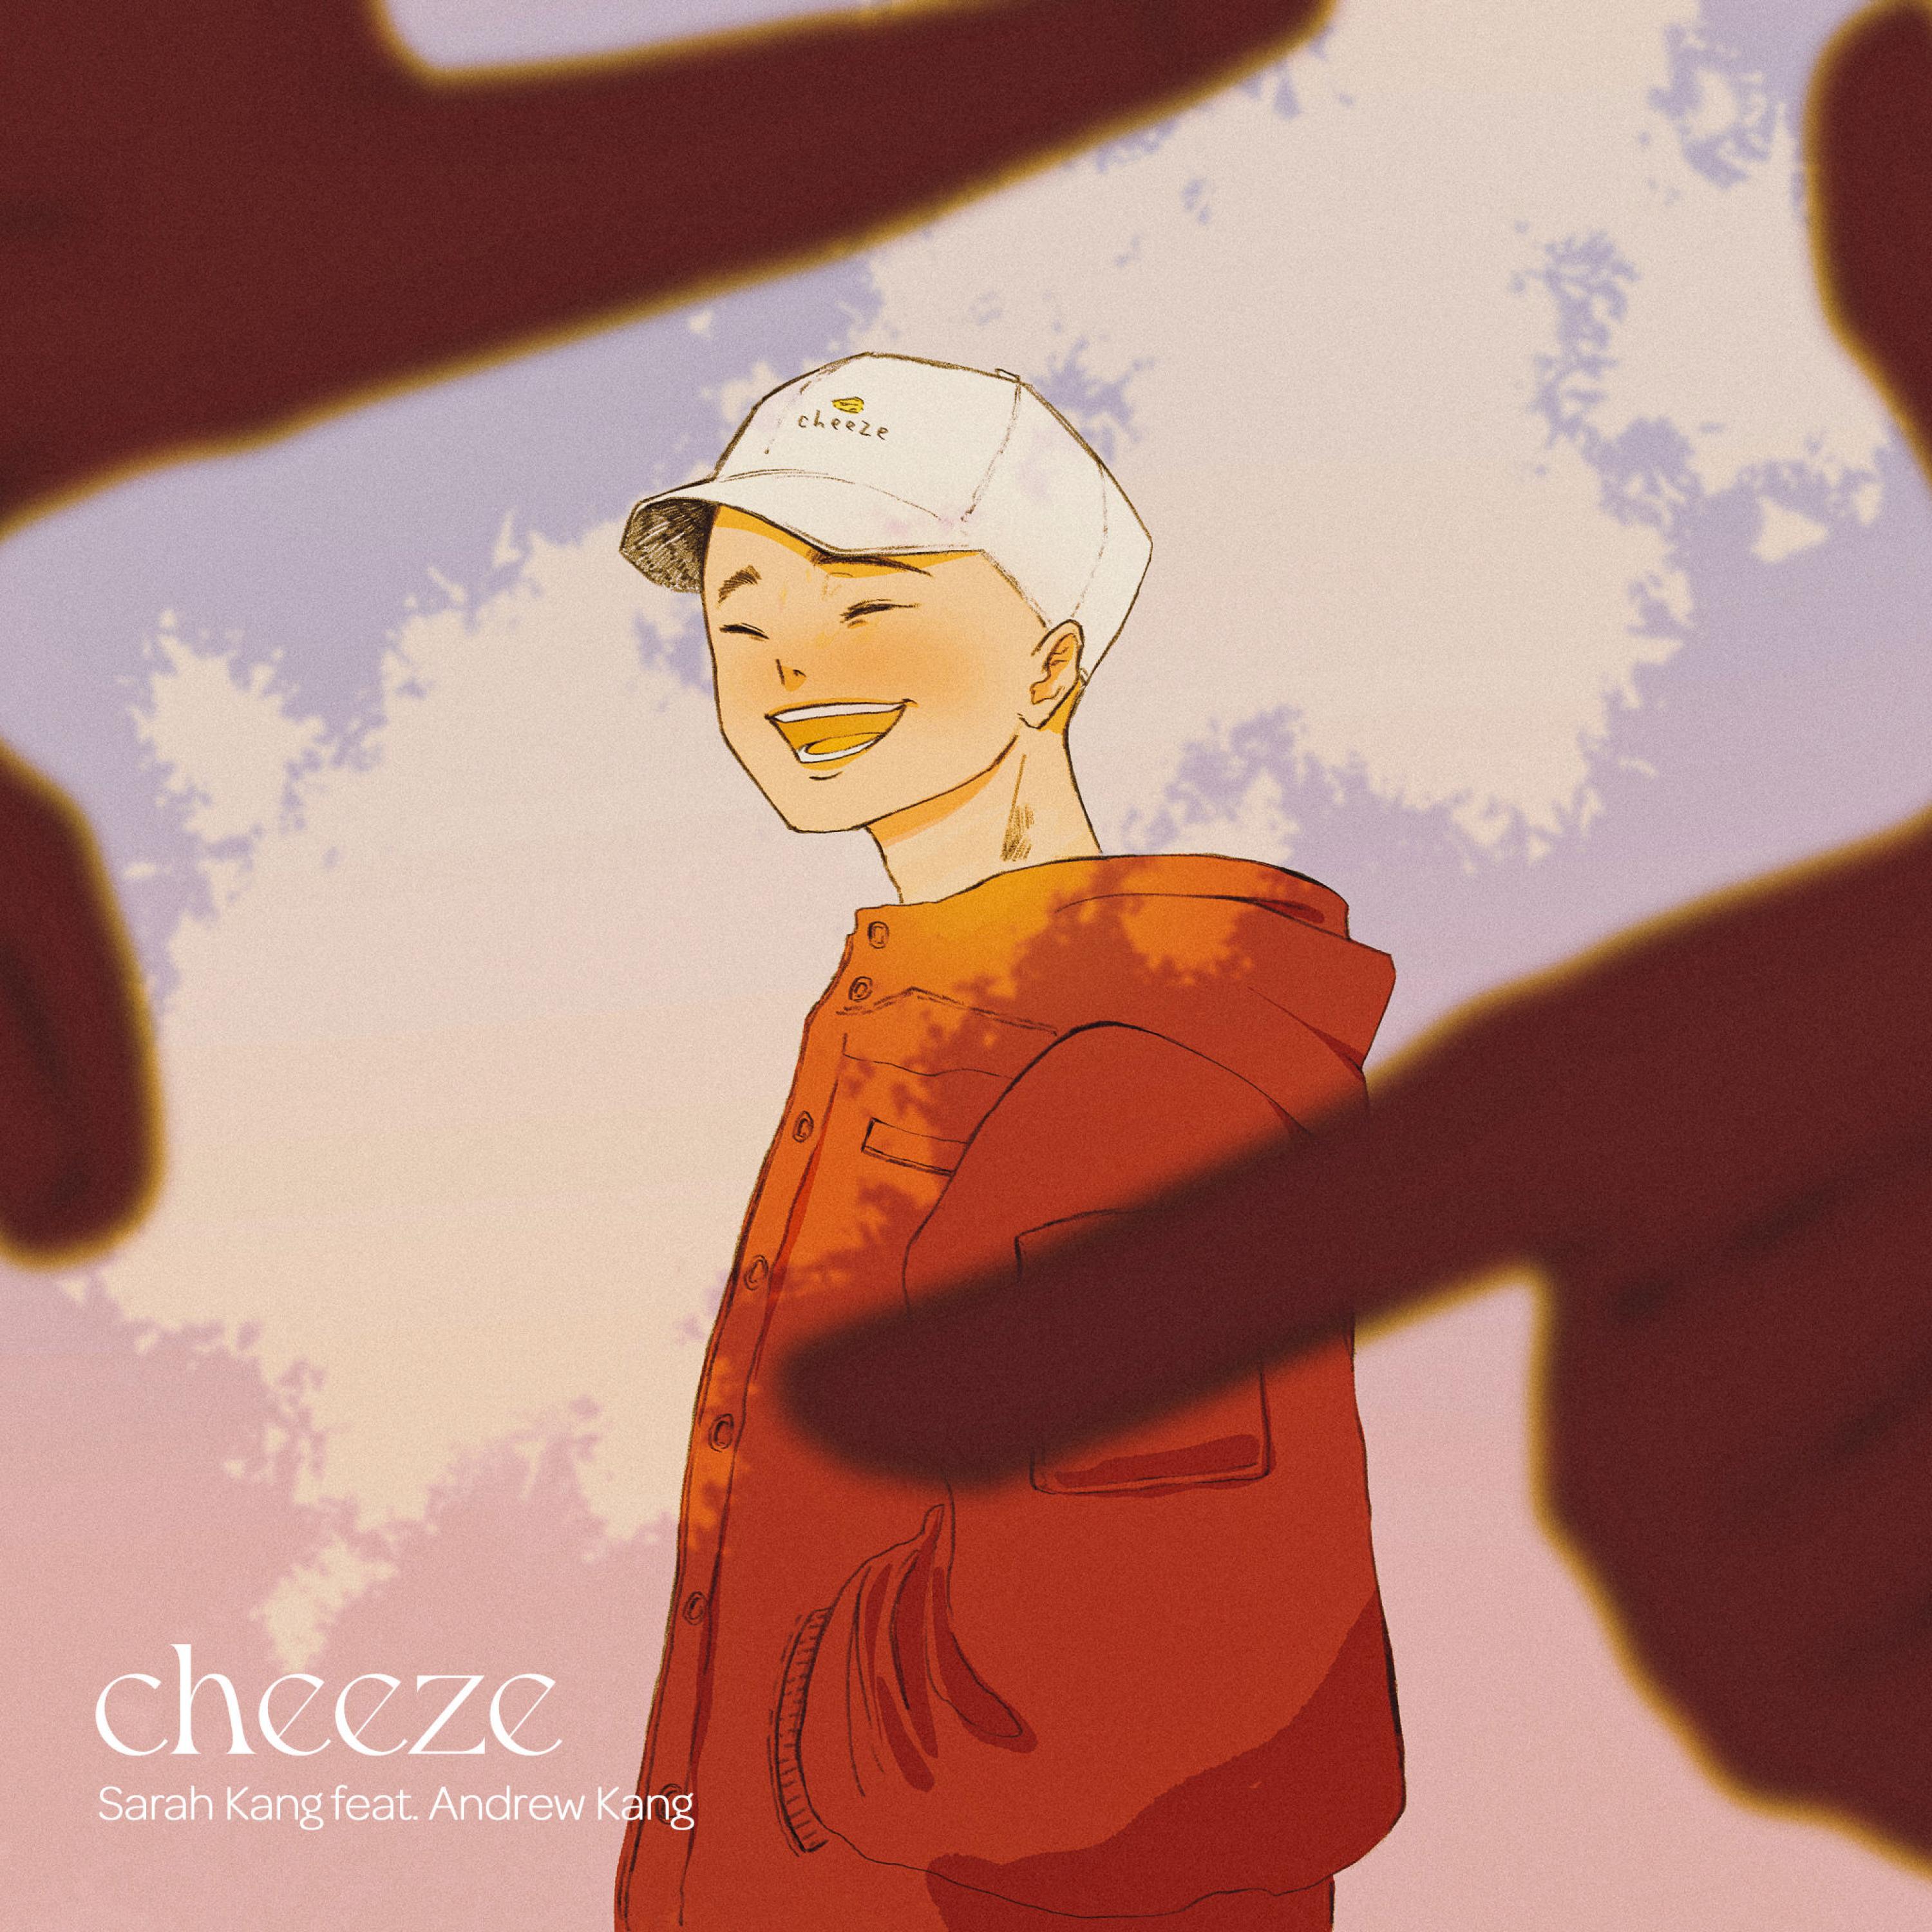 cheeze (feat. Andrew Kang)歌词 歌手Sarah Kang / Andrew Kang-专辑cheeze (feat. Andrew Kang)-单曲《cheeze (feat. Andrew Kang)》LRC歌词下载